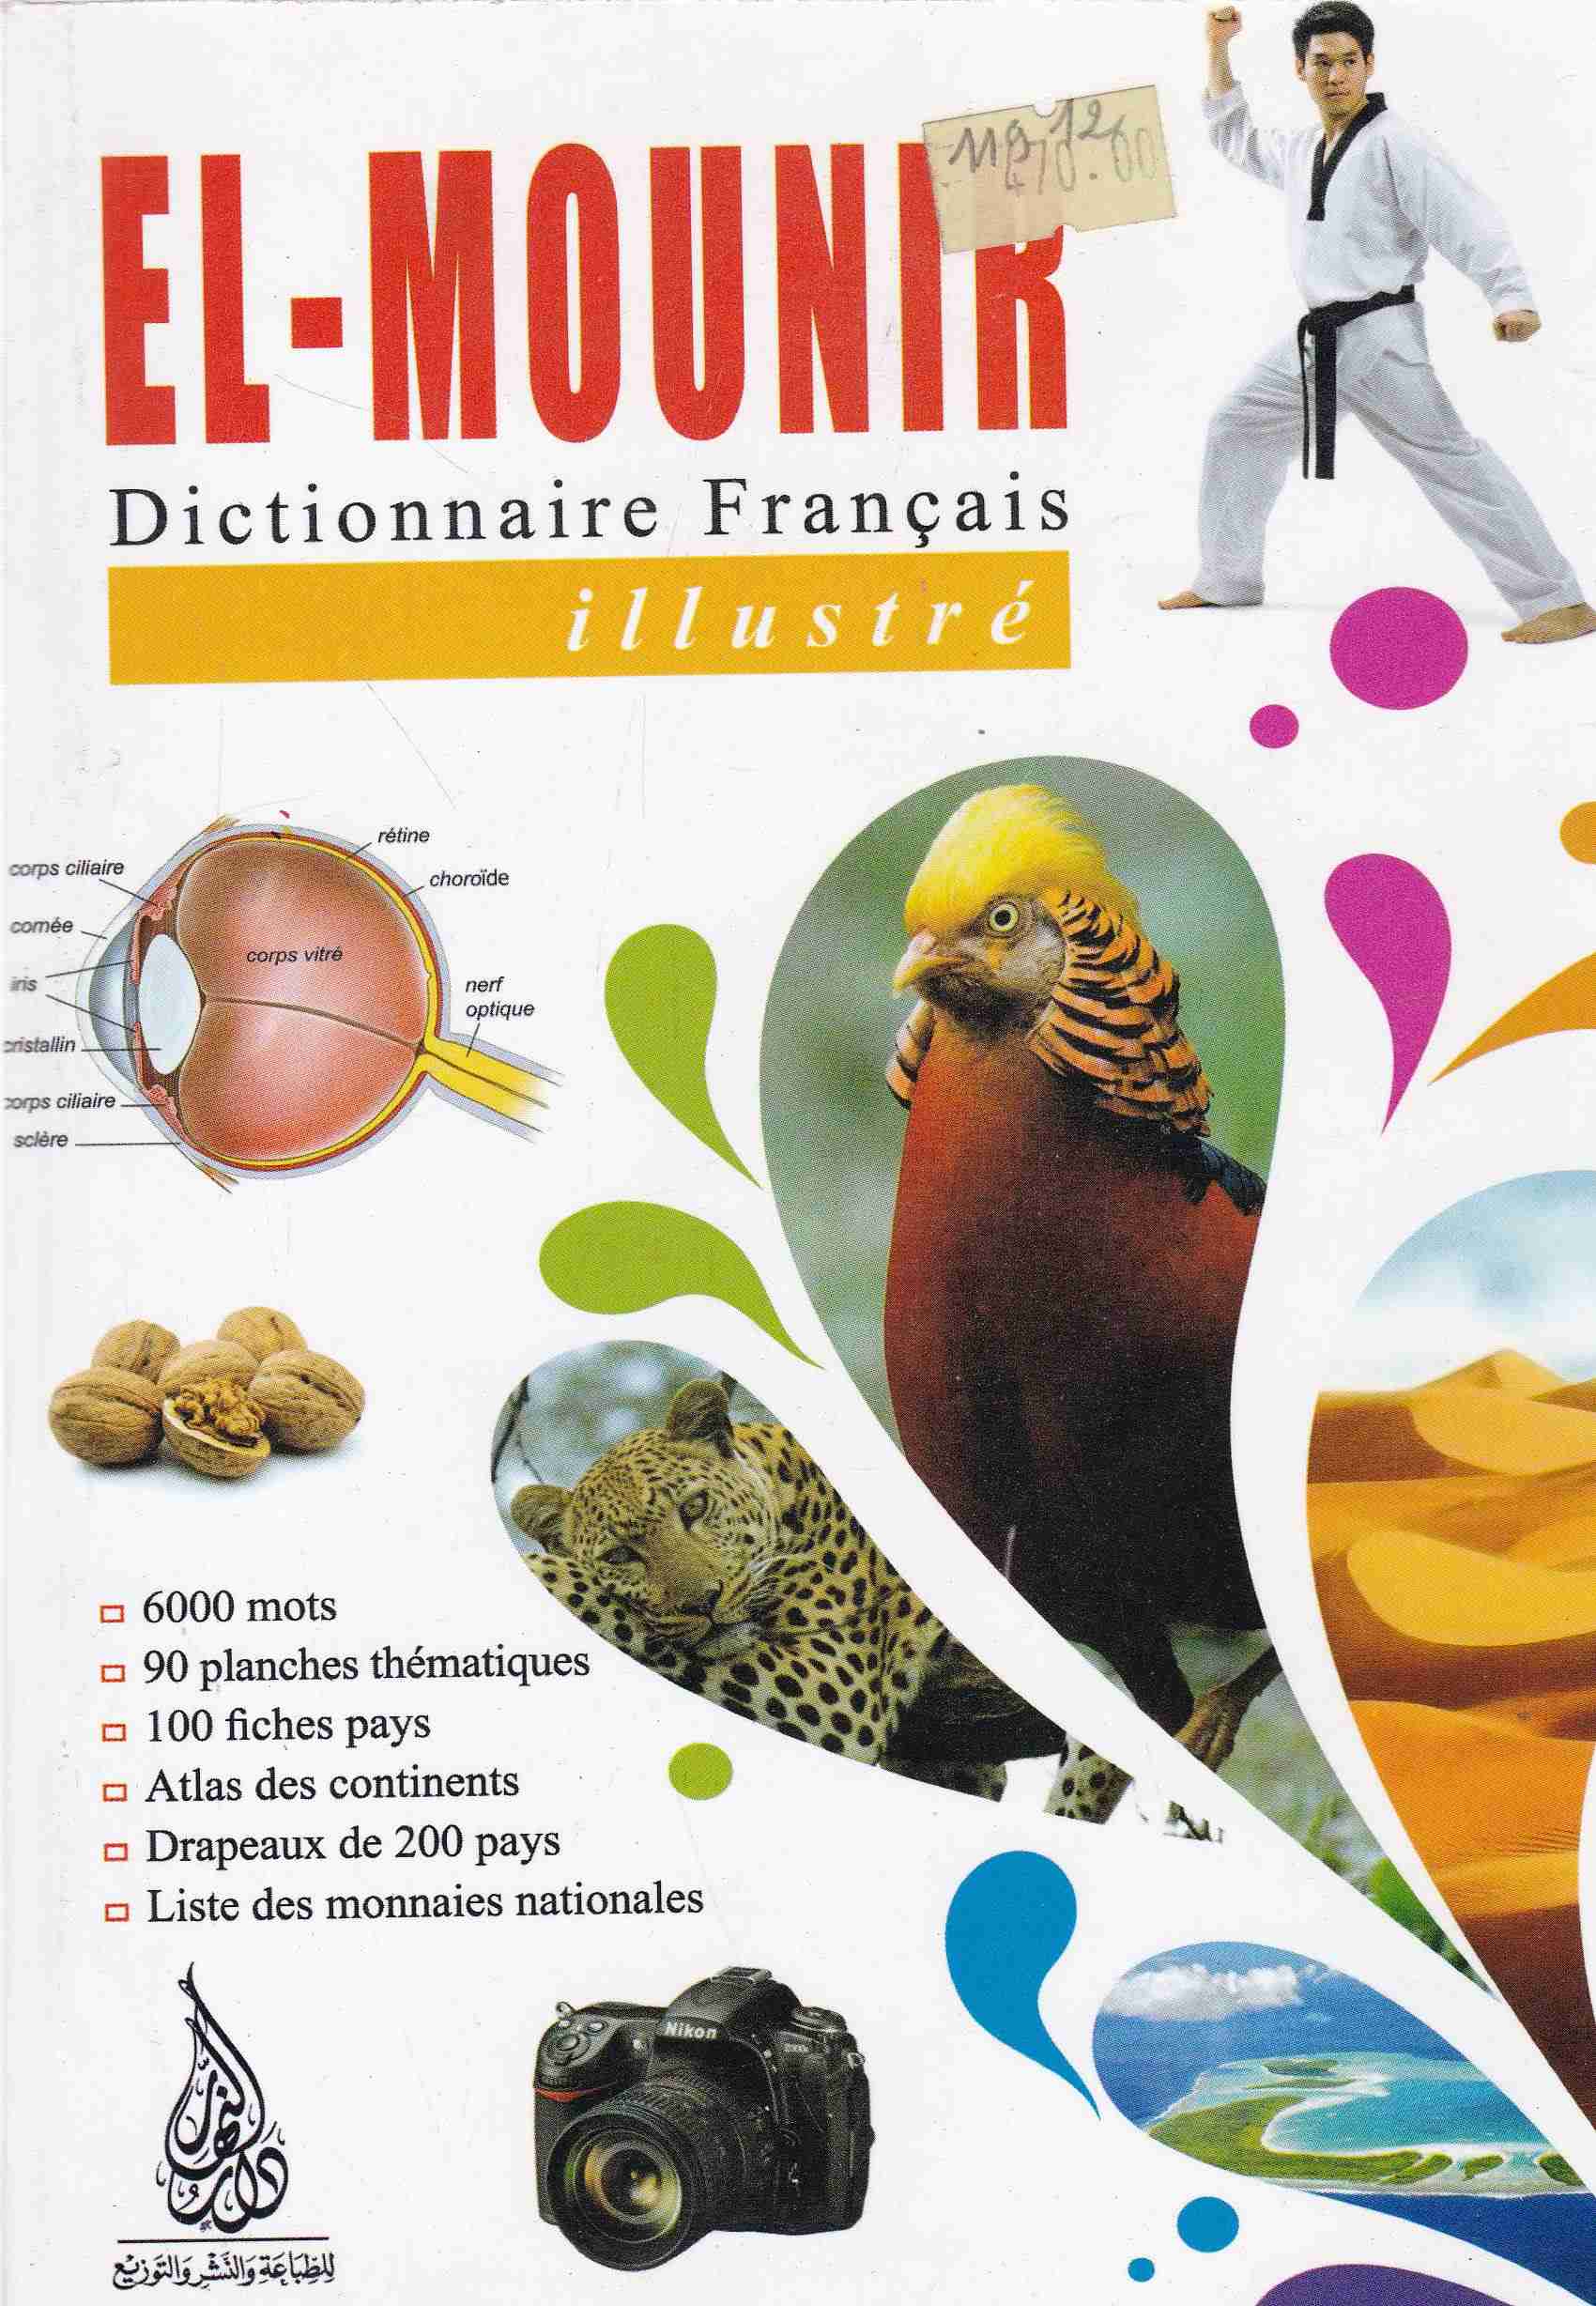 el-mounir dictionnaire francais illustre